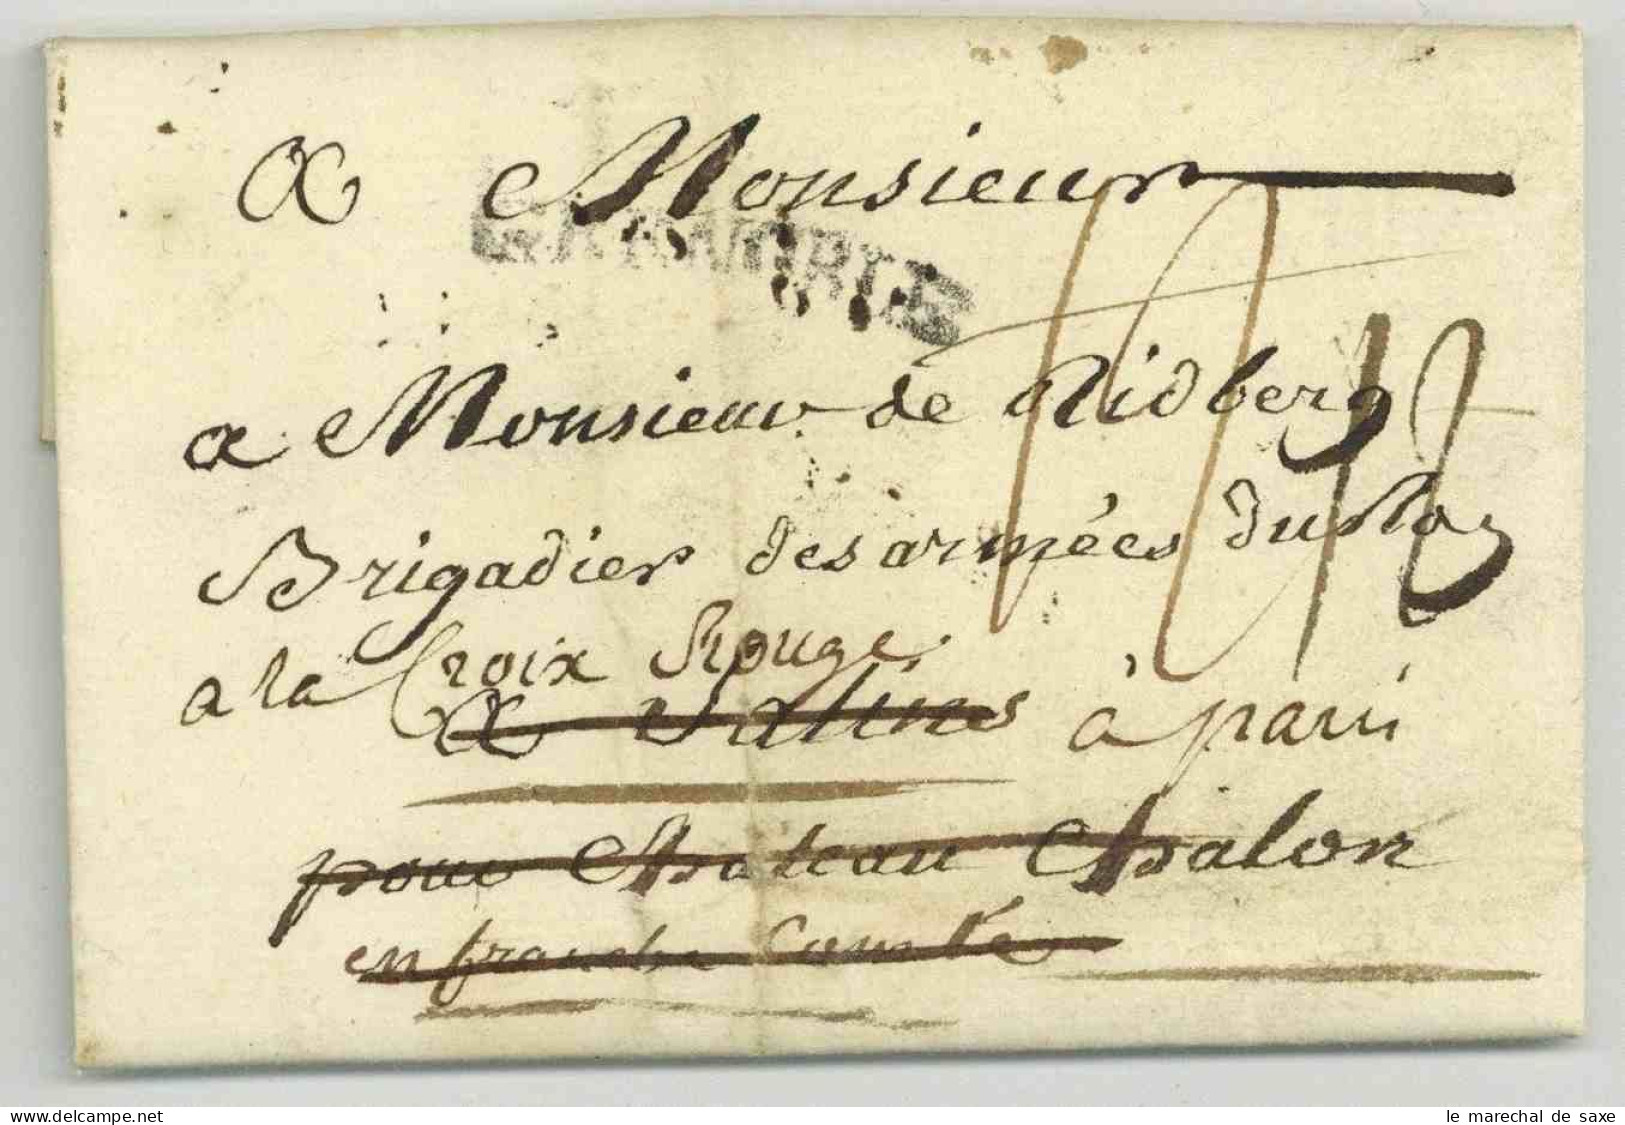 Pierre Joseph De Bourcet (1700-1780) Ingenieur Cartographe Lieutenant General Autographe Grenoble 1779 Deboursé Salins - Personajes Historicos